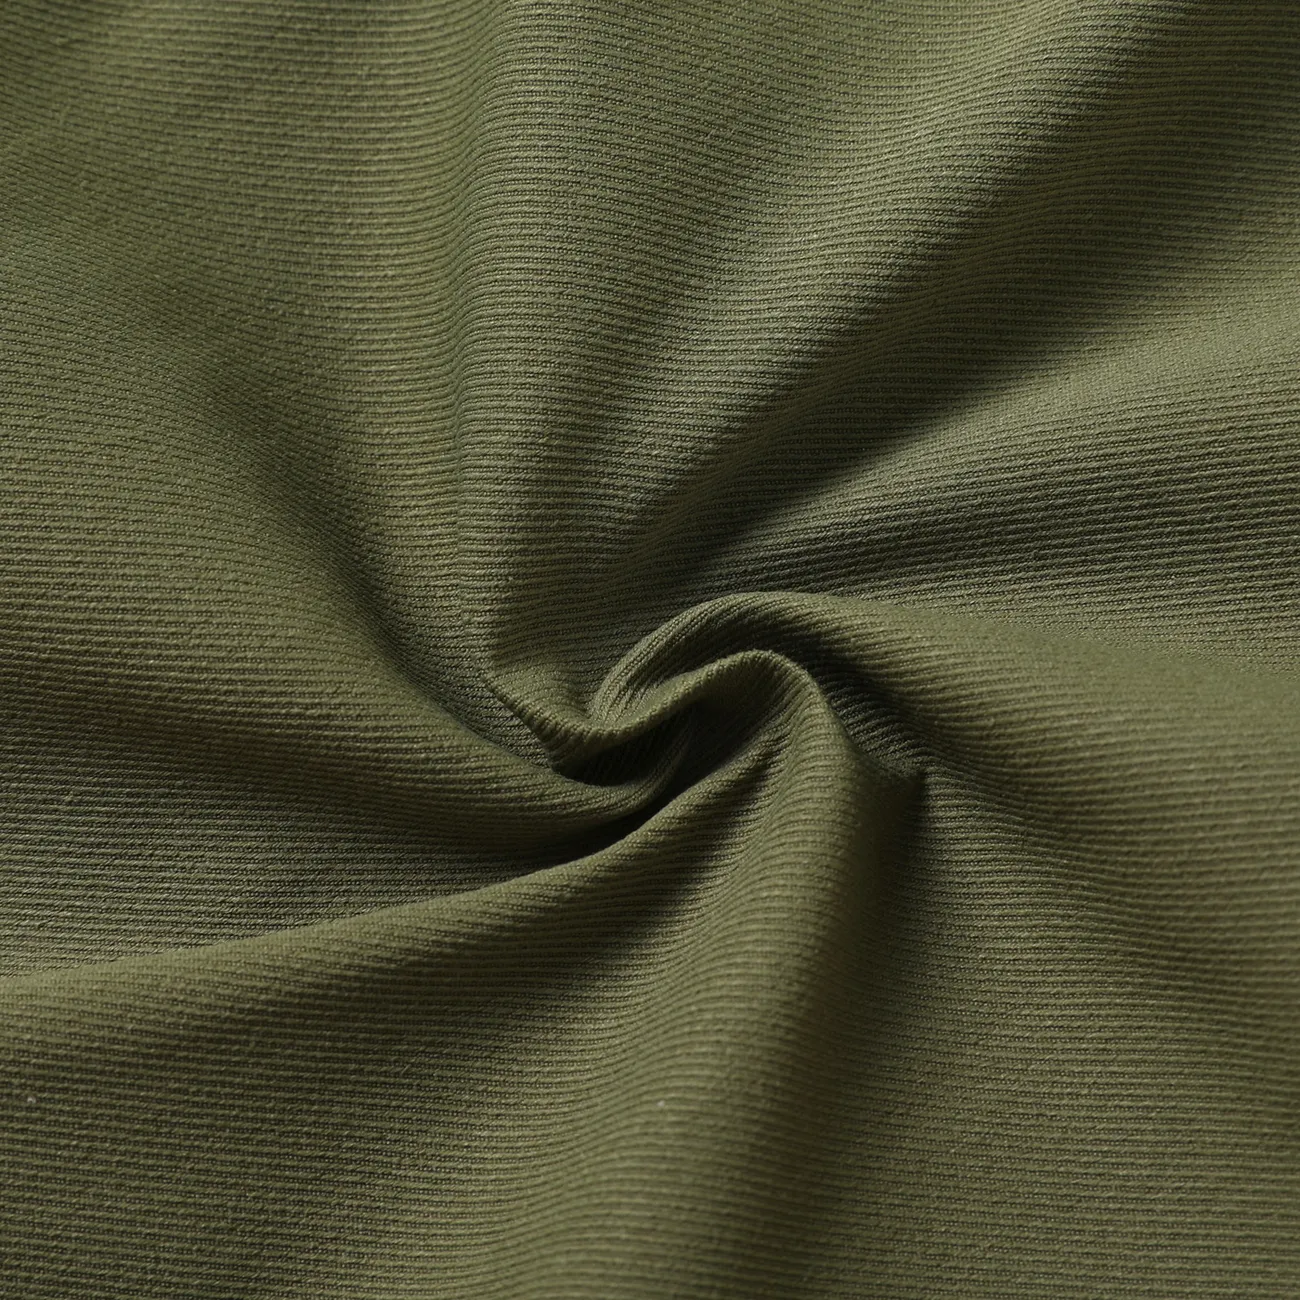 Calças elásticas com design de bolso casual para menino infantil Exército Verde big image 1